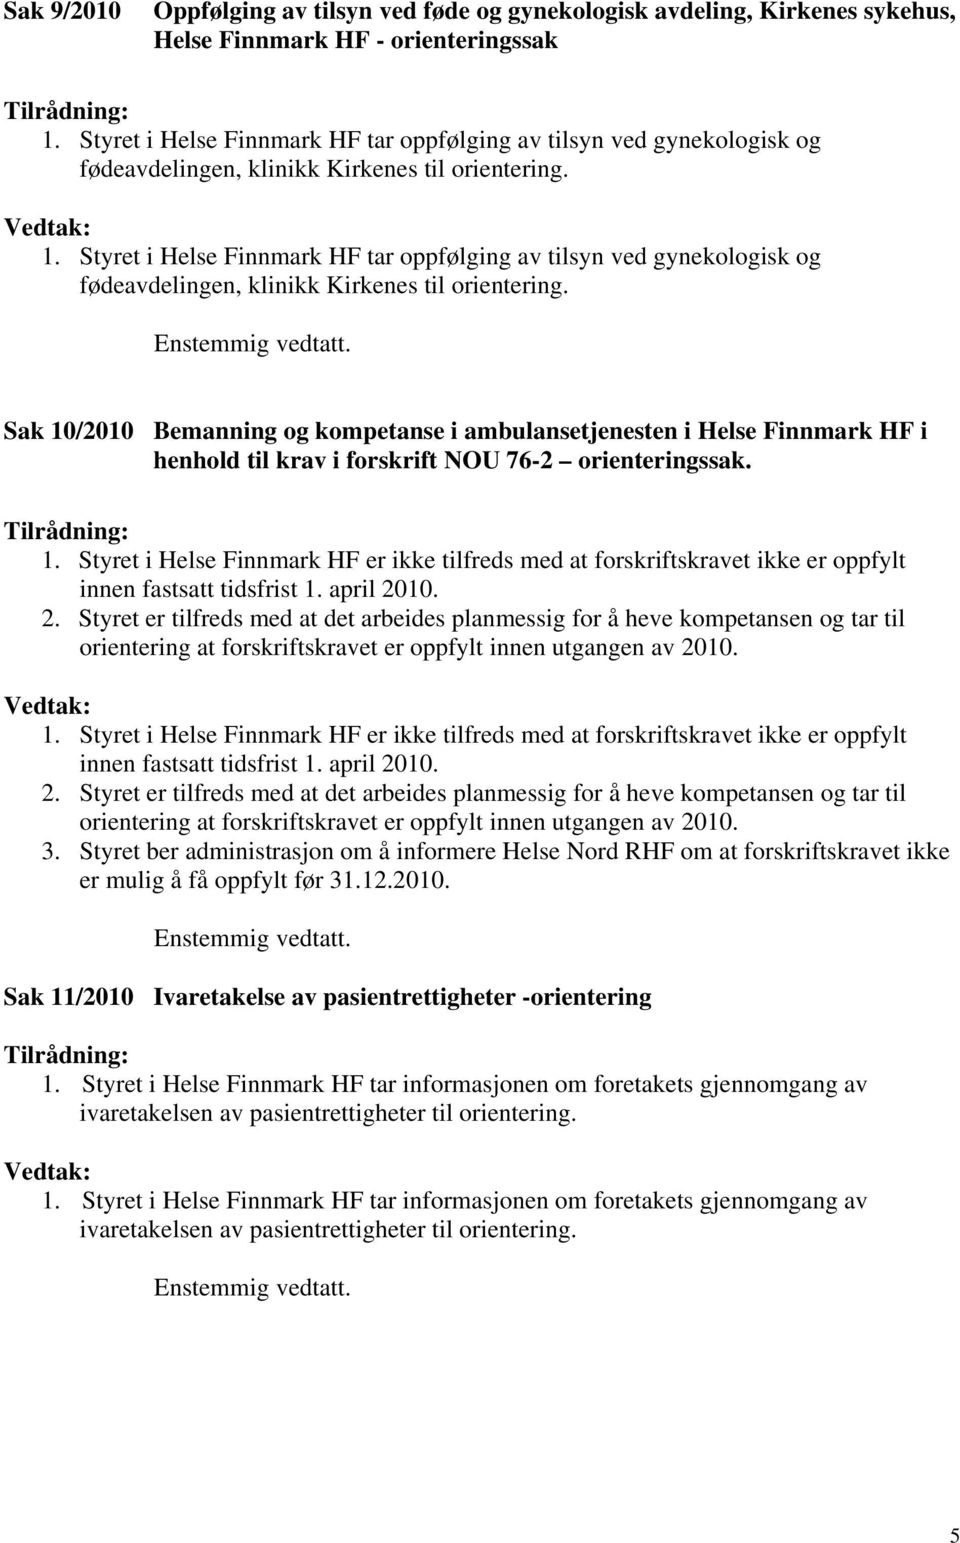 Styret i Helse Finnmark HF tar oppfølging av tilsyn ved gynekologisk og fødeavdelingen, klinikk Kirkenes til orientering. Enstemmig vedtatt.